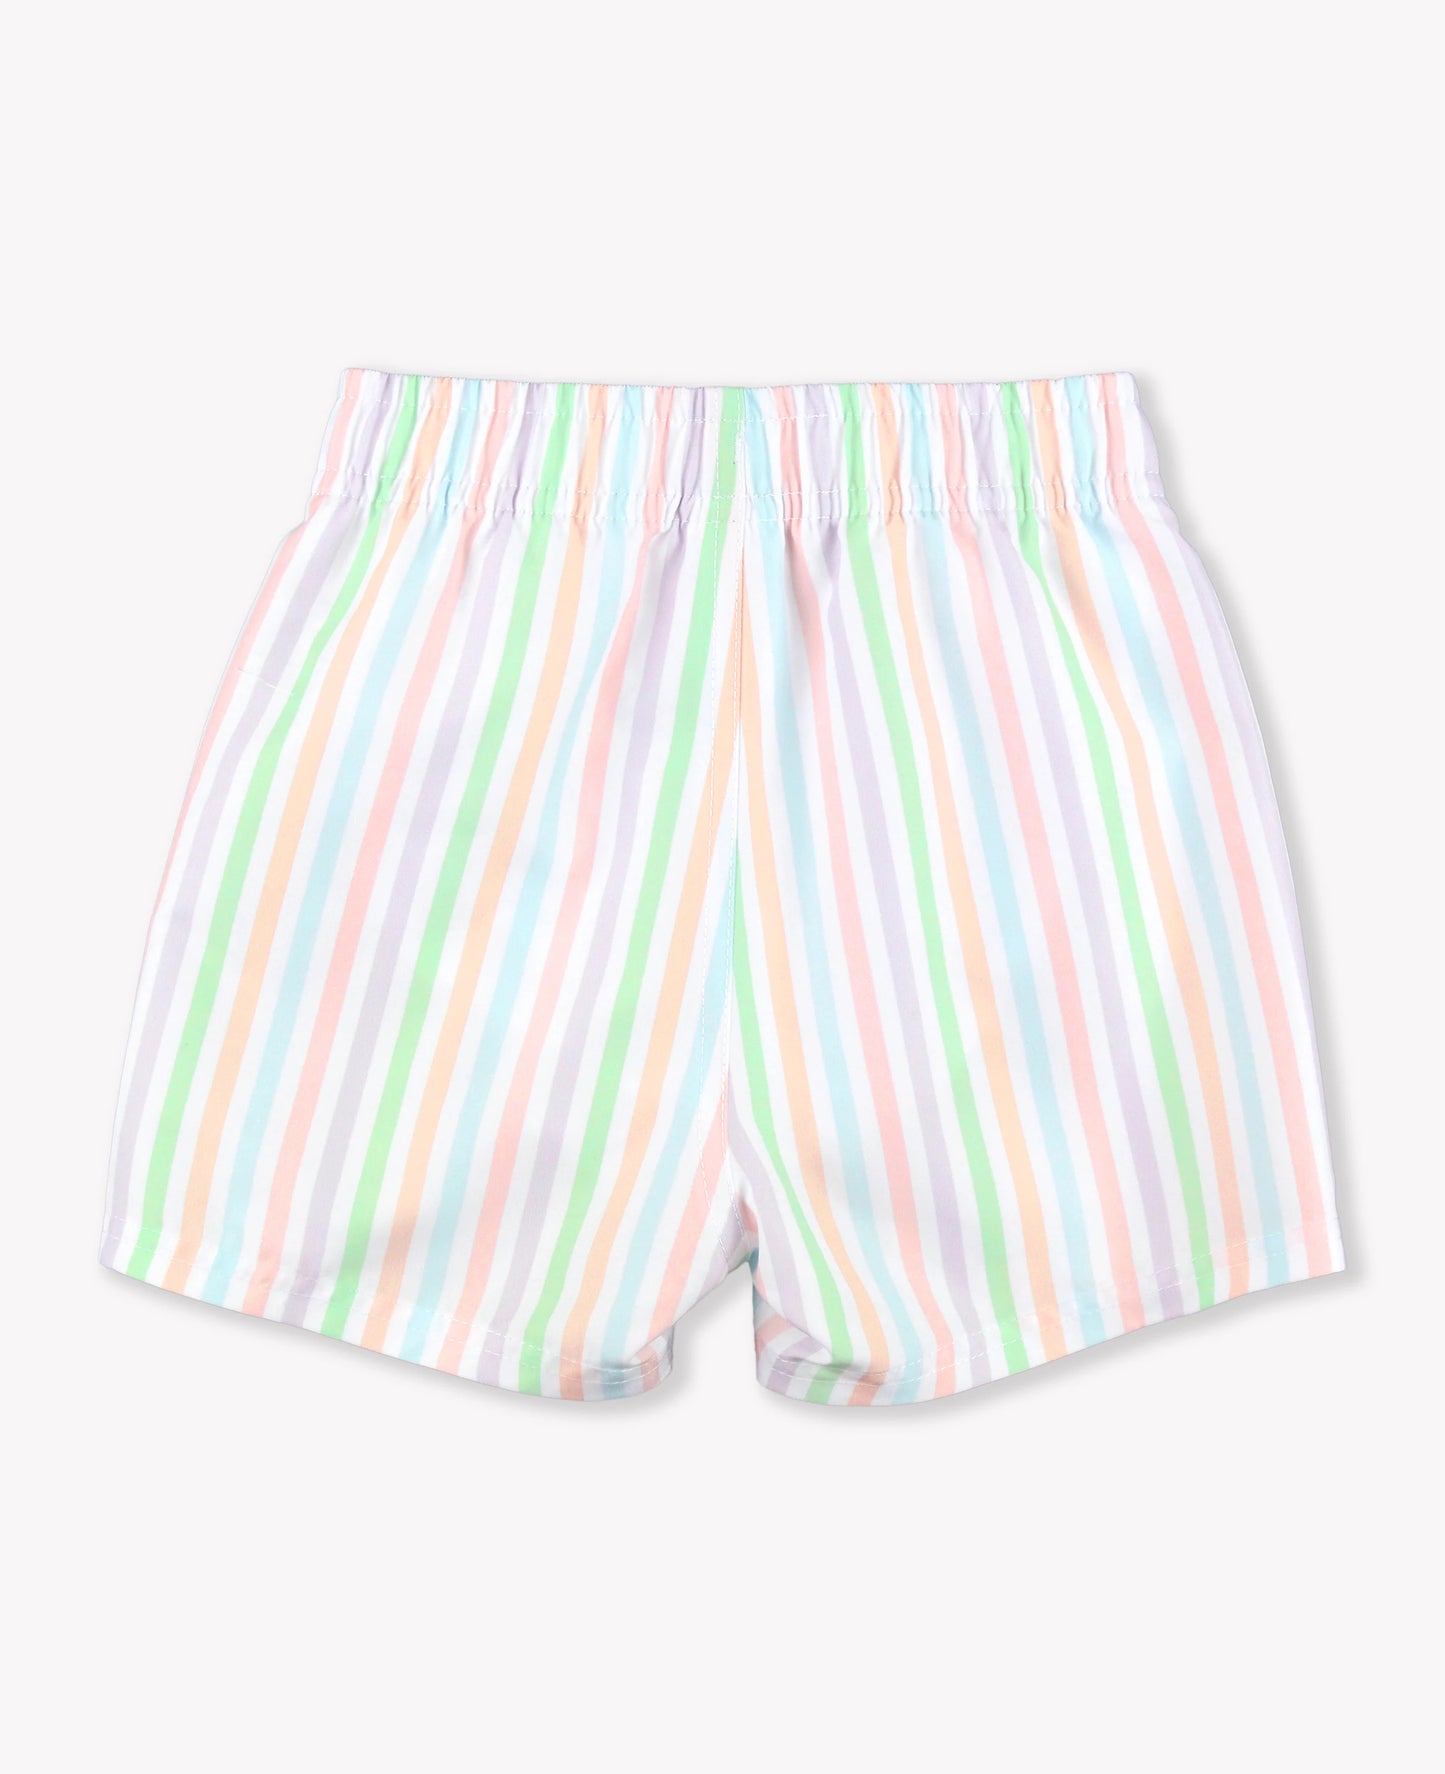 Pale Rainbow Stripe Swim Trunks